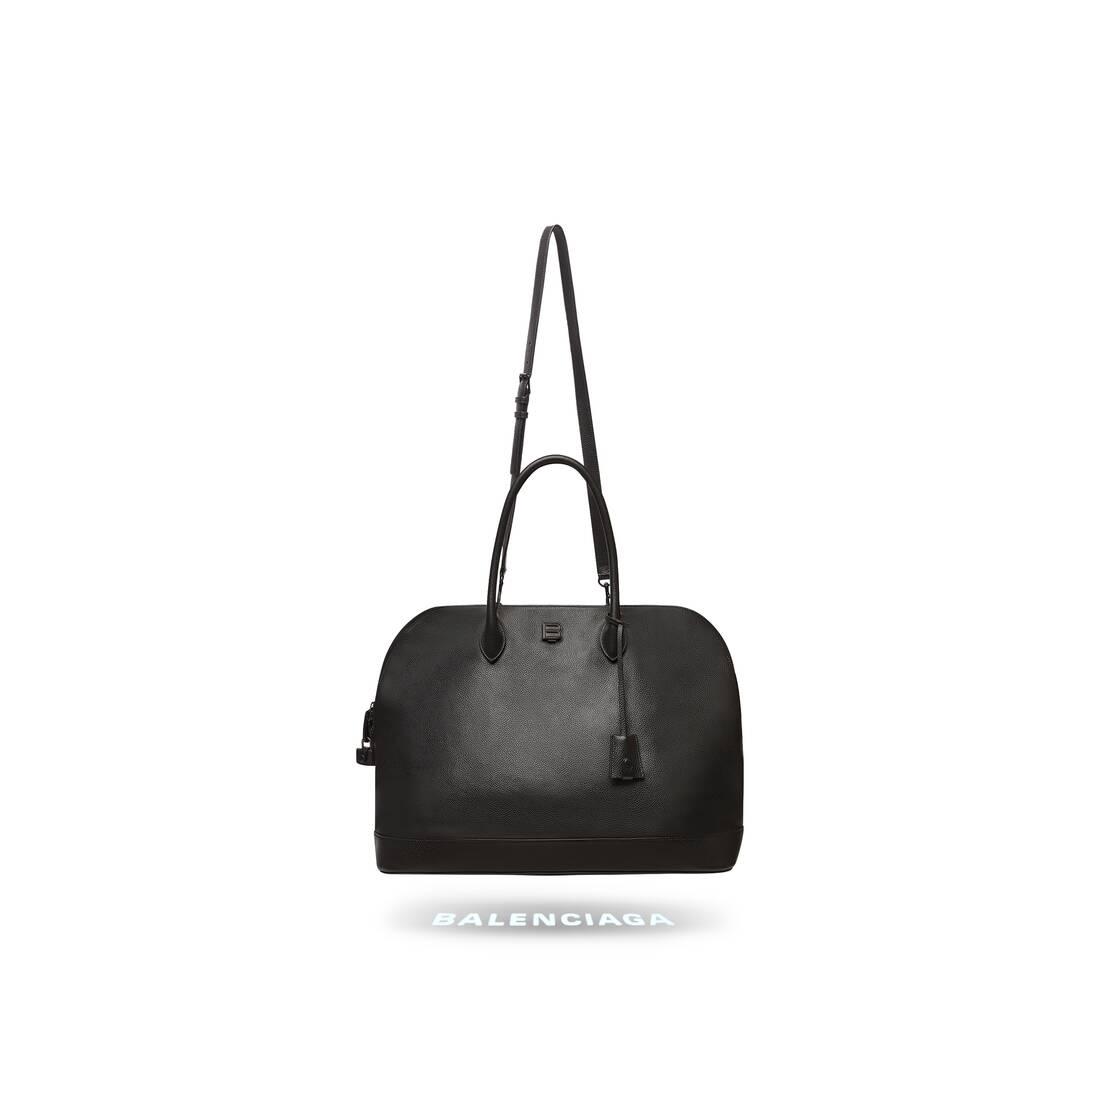 Balenciaga bag sale up to 60 off